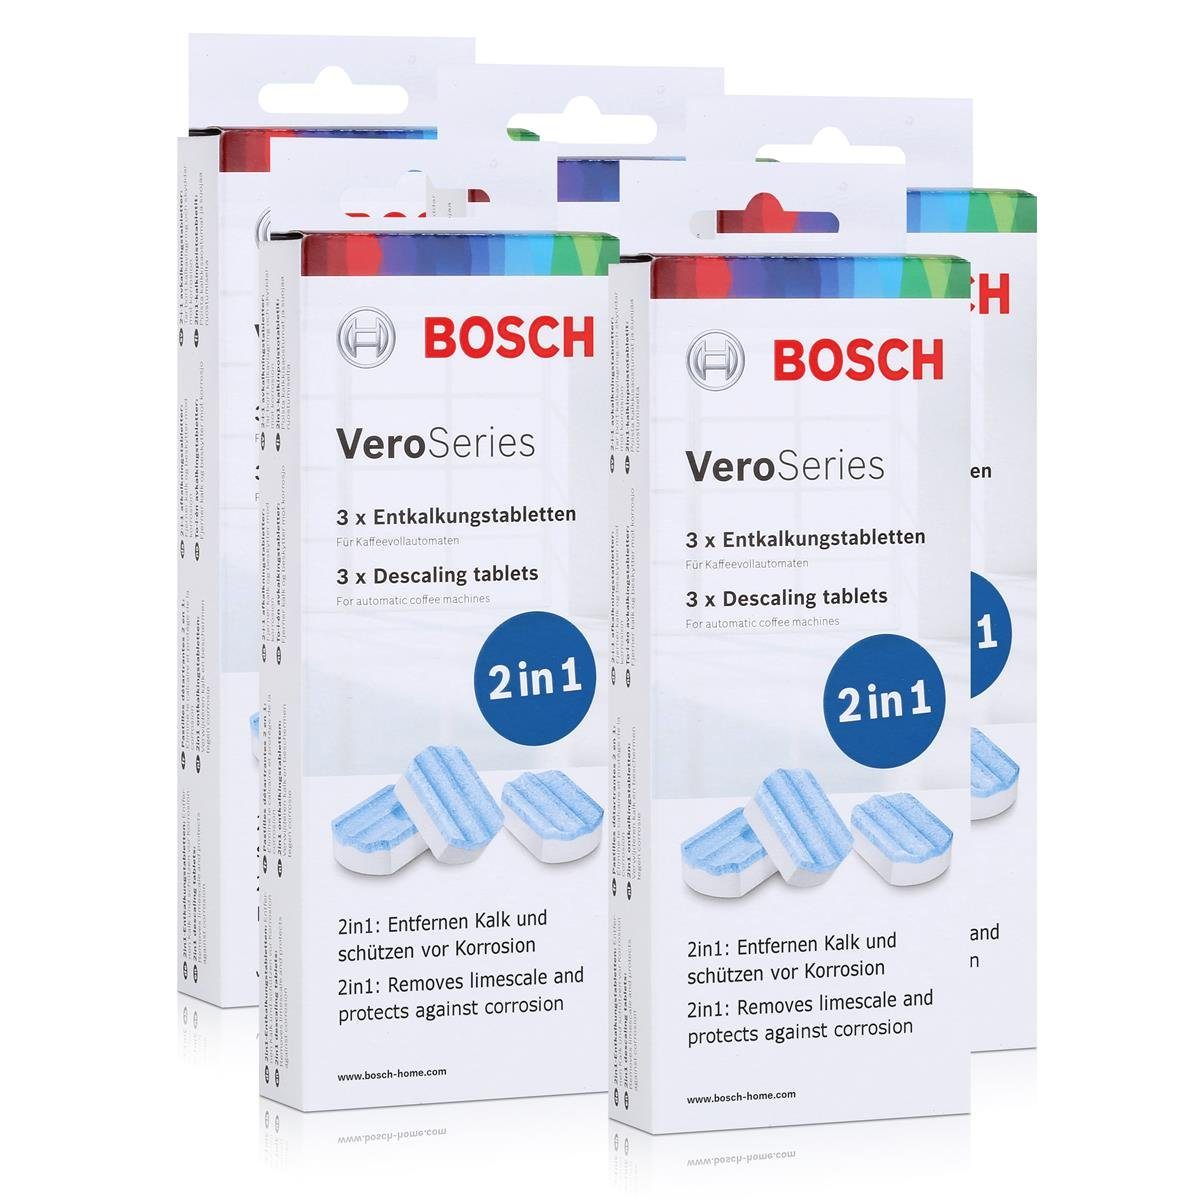 BOSCH 5x Bosch VeroSeries TCZ8002 Entkalkungstabletten 2in1 für Kaffeevollau Entkalker